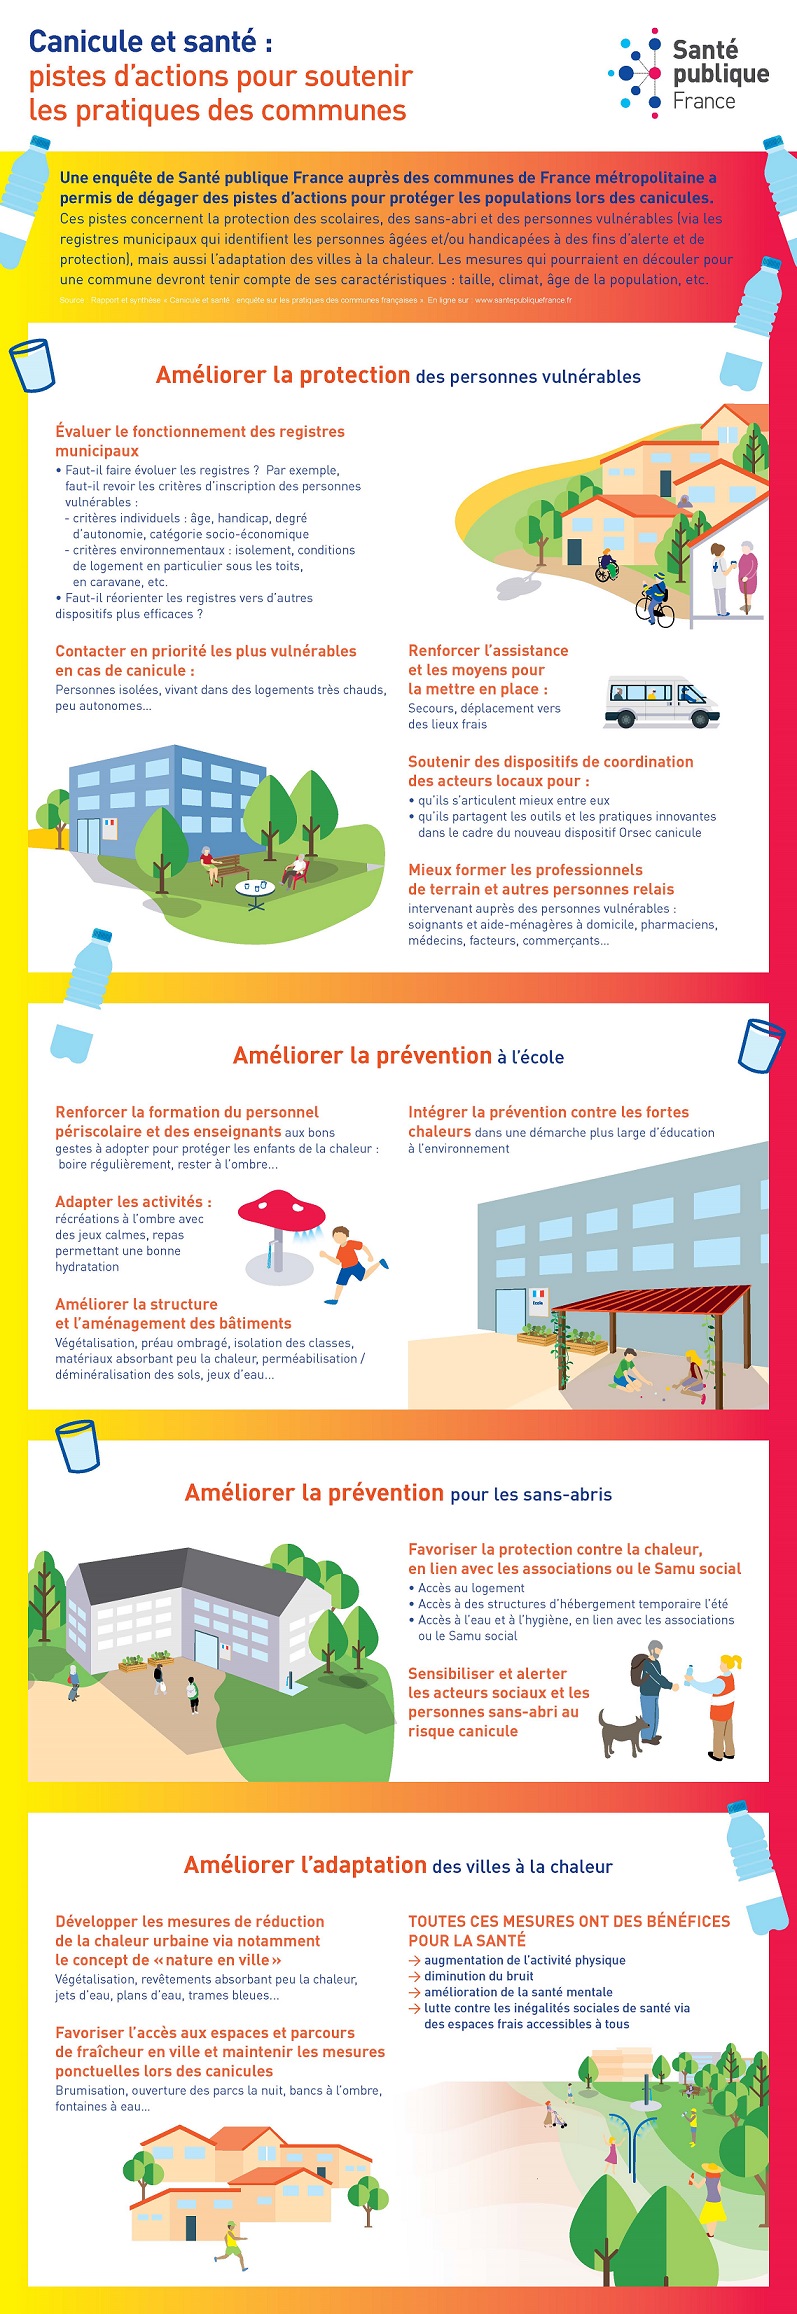 Infographie « Canicule et santé : comment les communes peuvent-elles améliorer leurs pratiques ? »